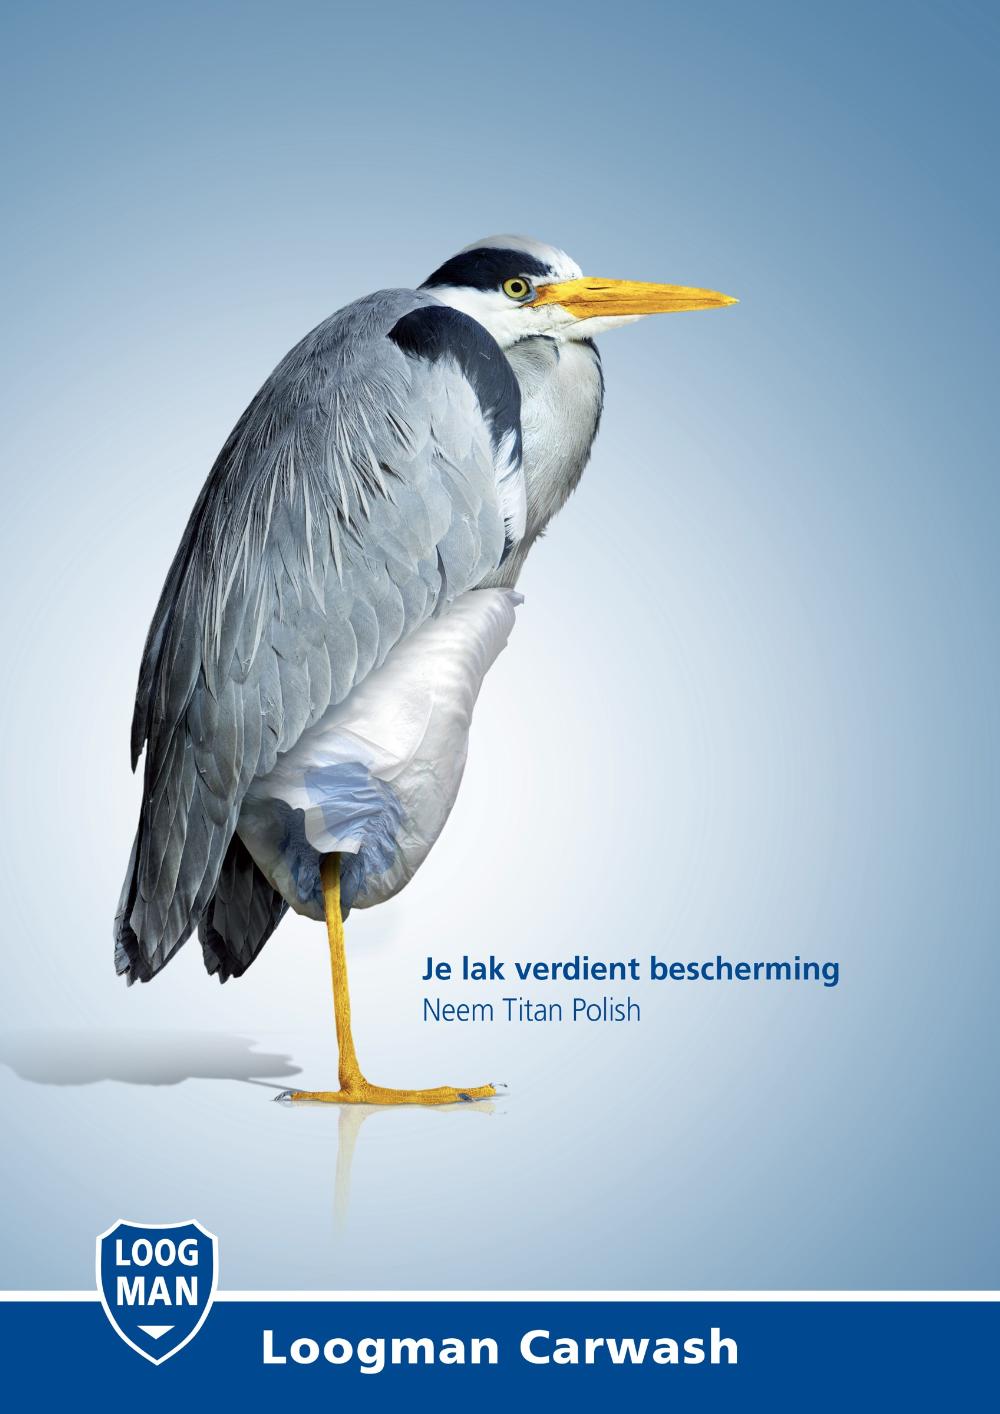 荷兰洗车行平面广告设计